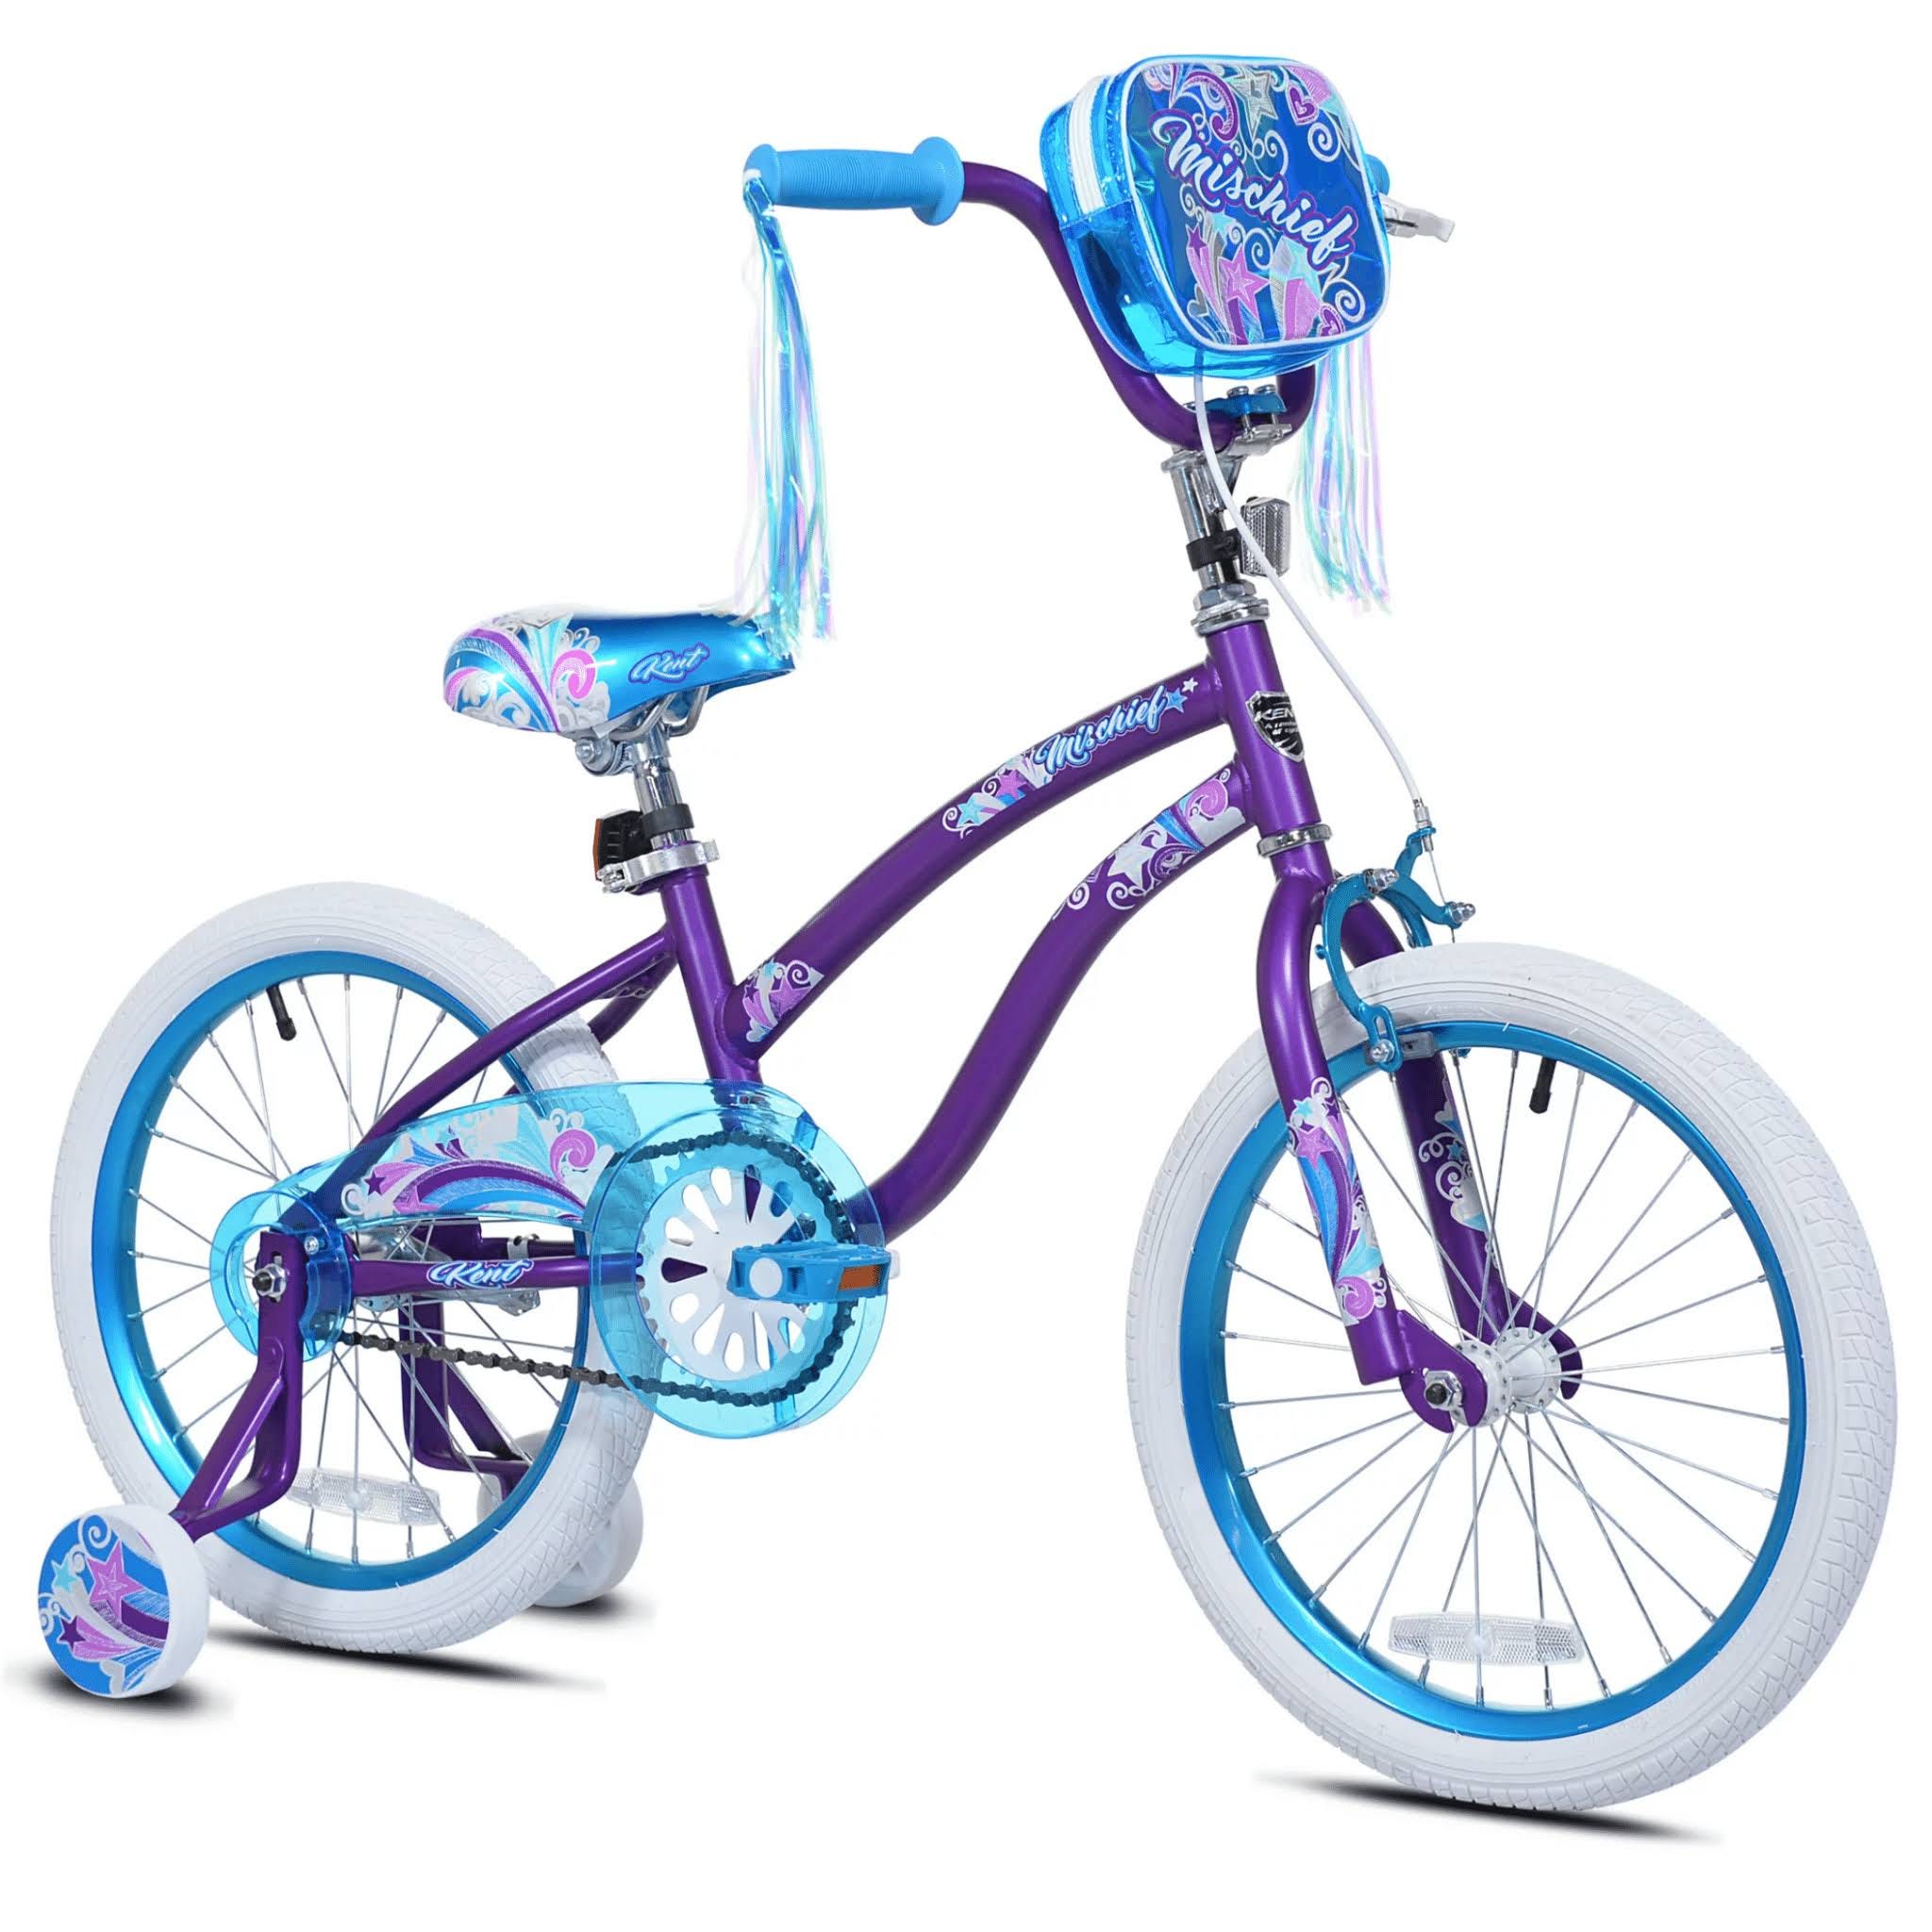 Kent Mischief 18-inch Toddler Bike in Purple | Image